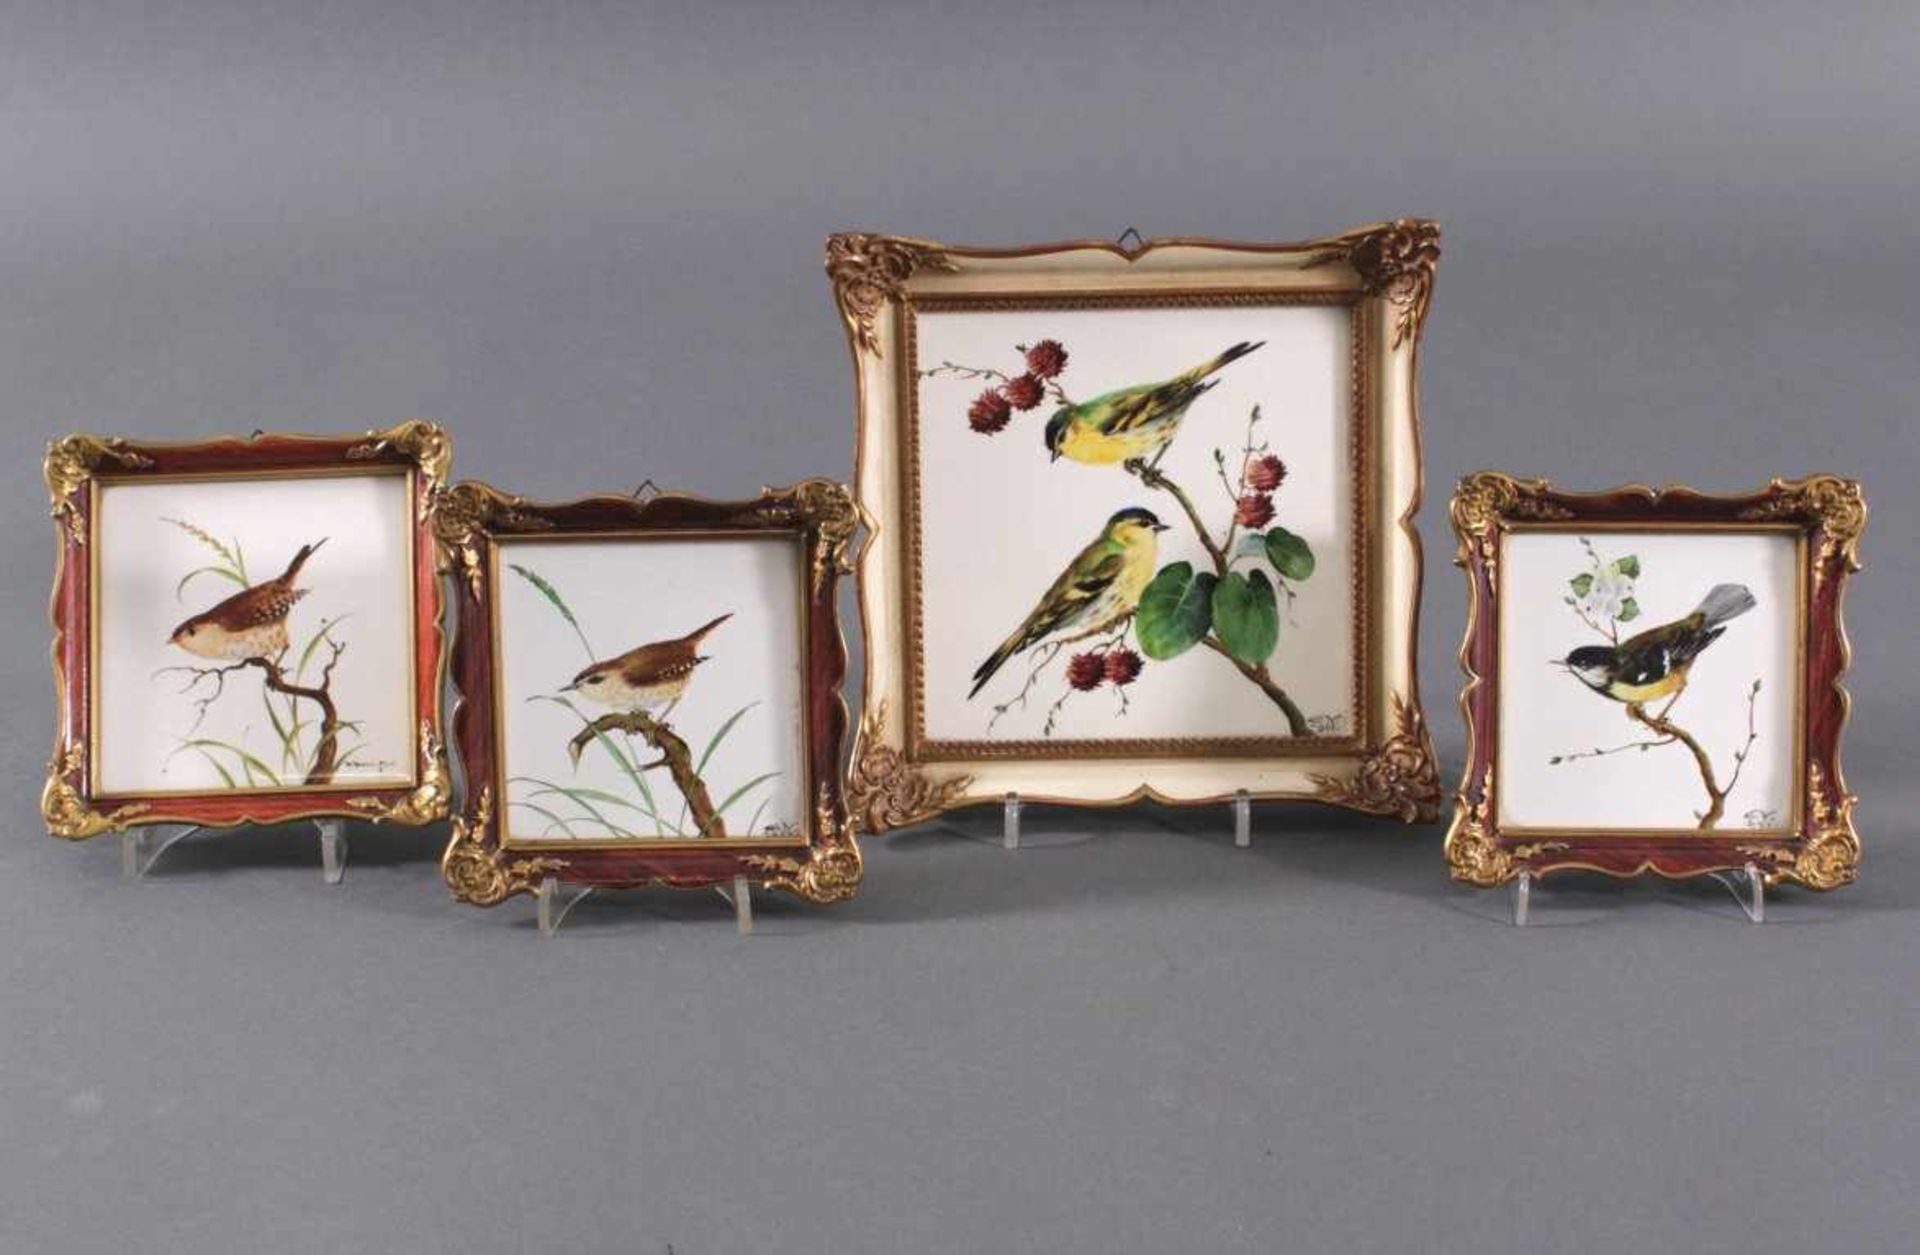 Rosenthal Wandbilder, 4 StückWeißporzellan mit unterschiedlichen Vogelmotiven, jeweilsunten rechts